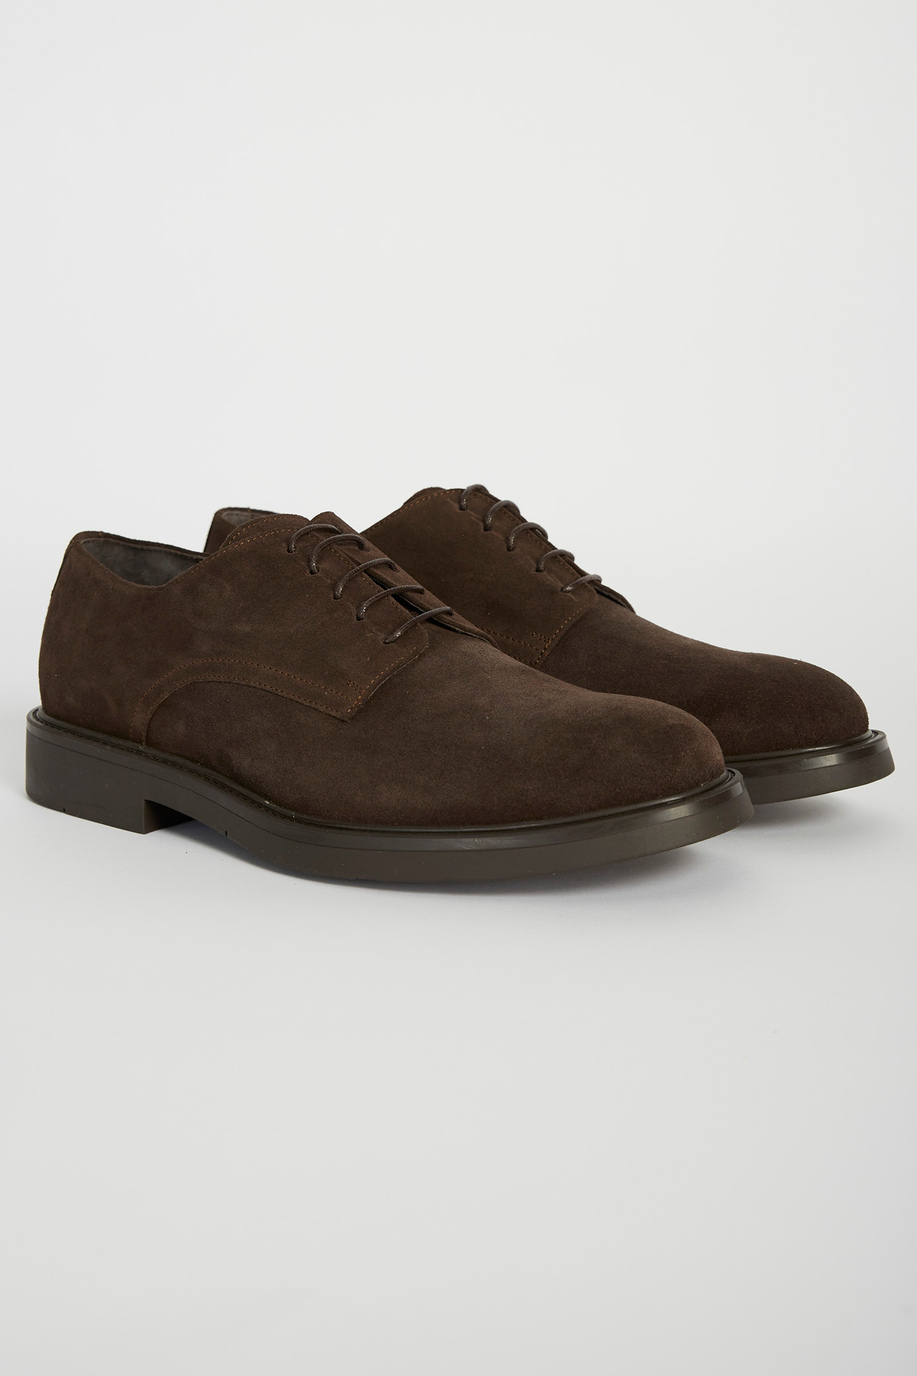 Classic leather shoe - Formal Shoes | La Martina - Official Online Shop